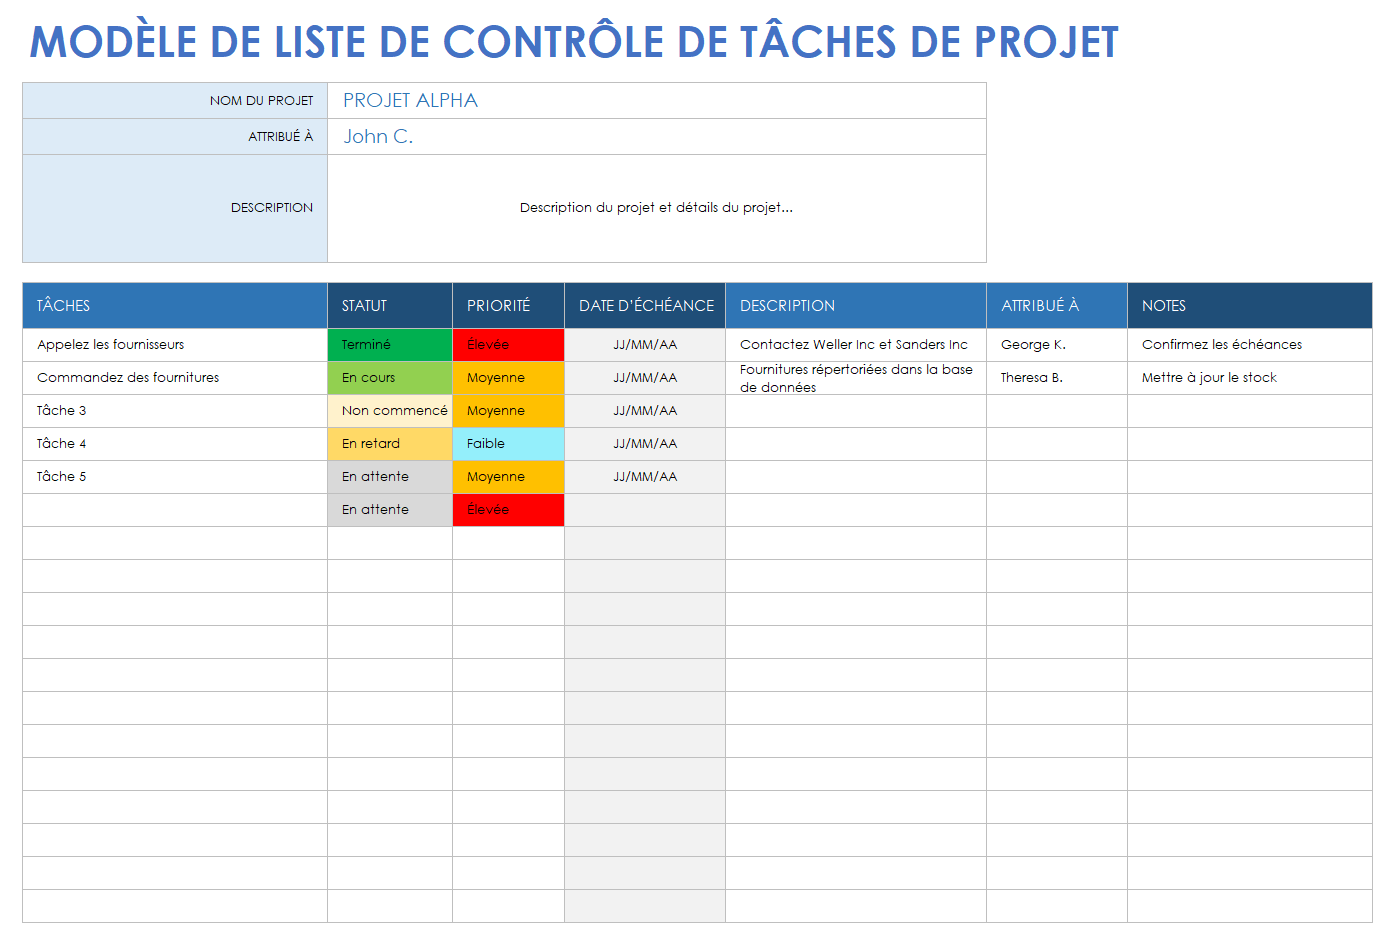 Liste de contrôle des tâches du projet